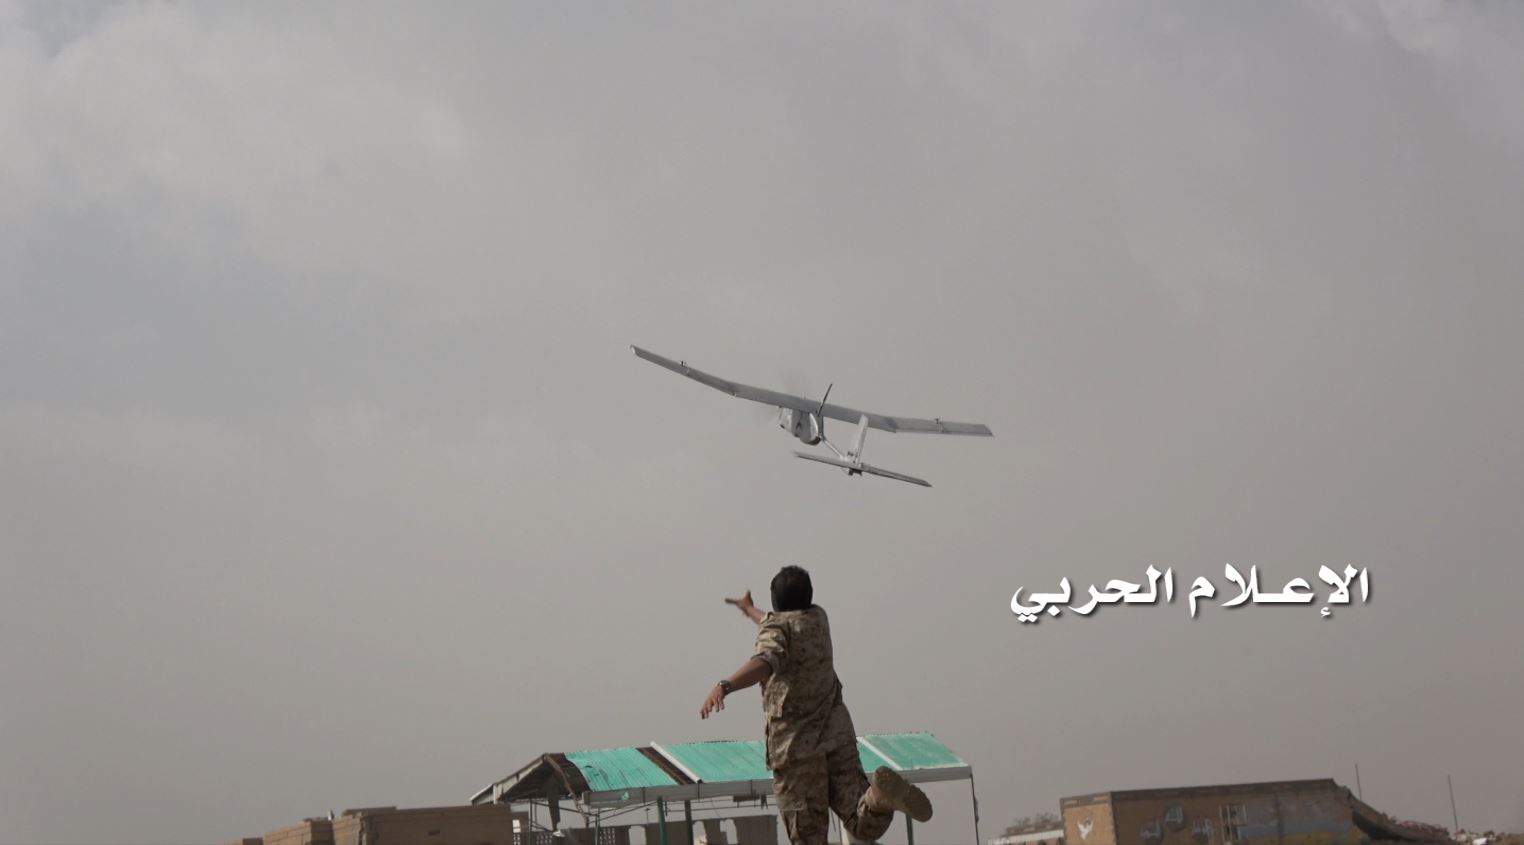 " الحوثيون" استهداف 3 مطارات سعودية بطائرات مفخخة والإصابات دقيقة وبيان من تحالف دعم الشرعية 7